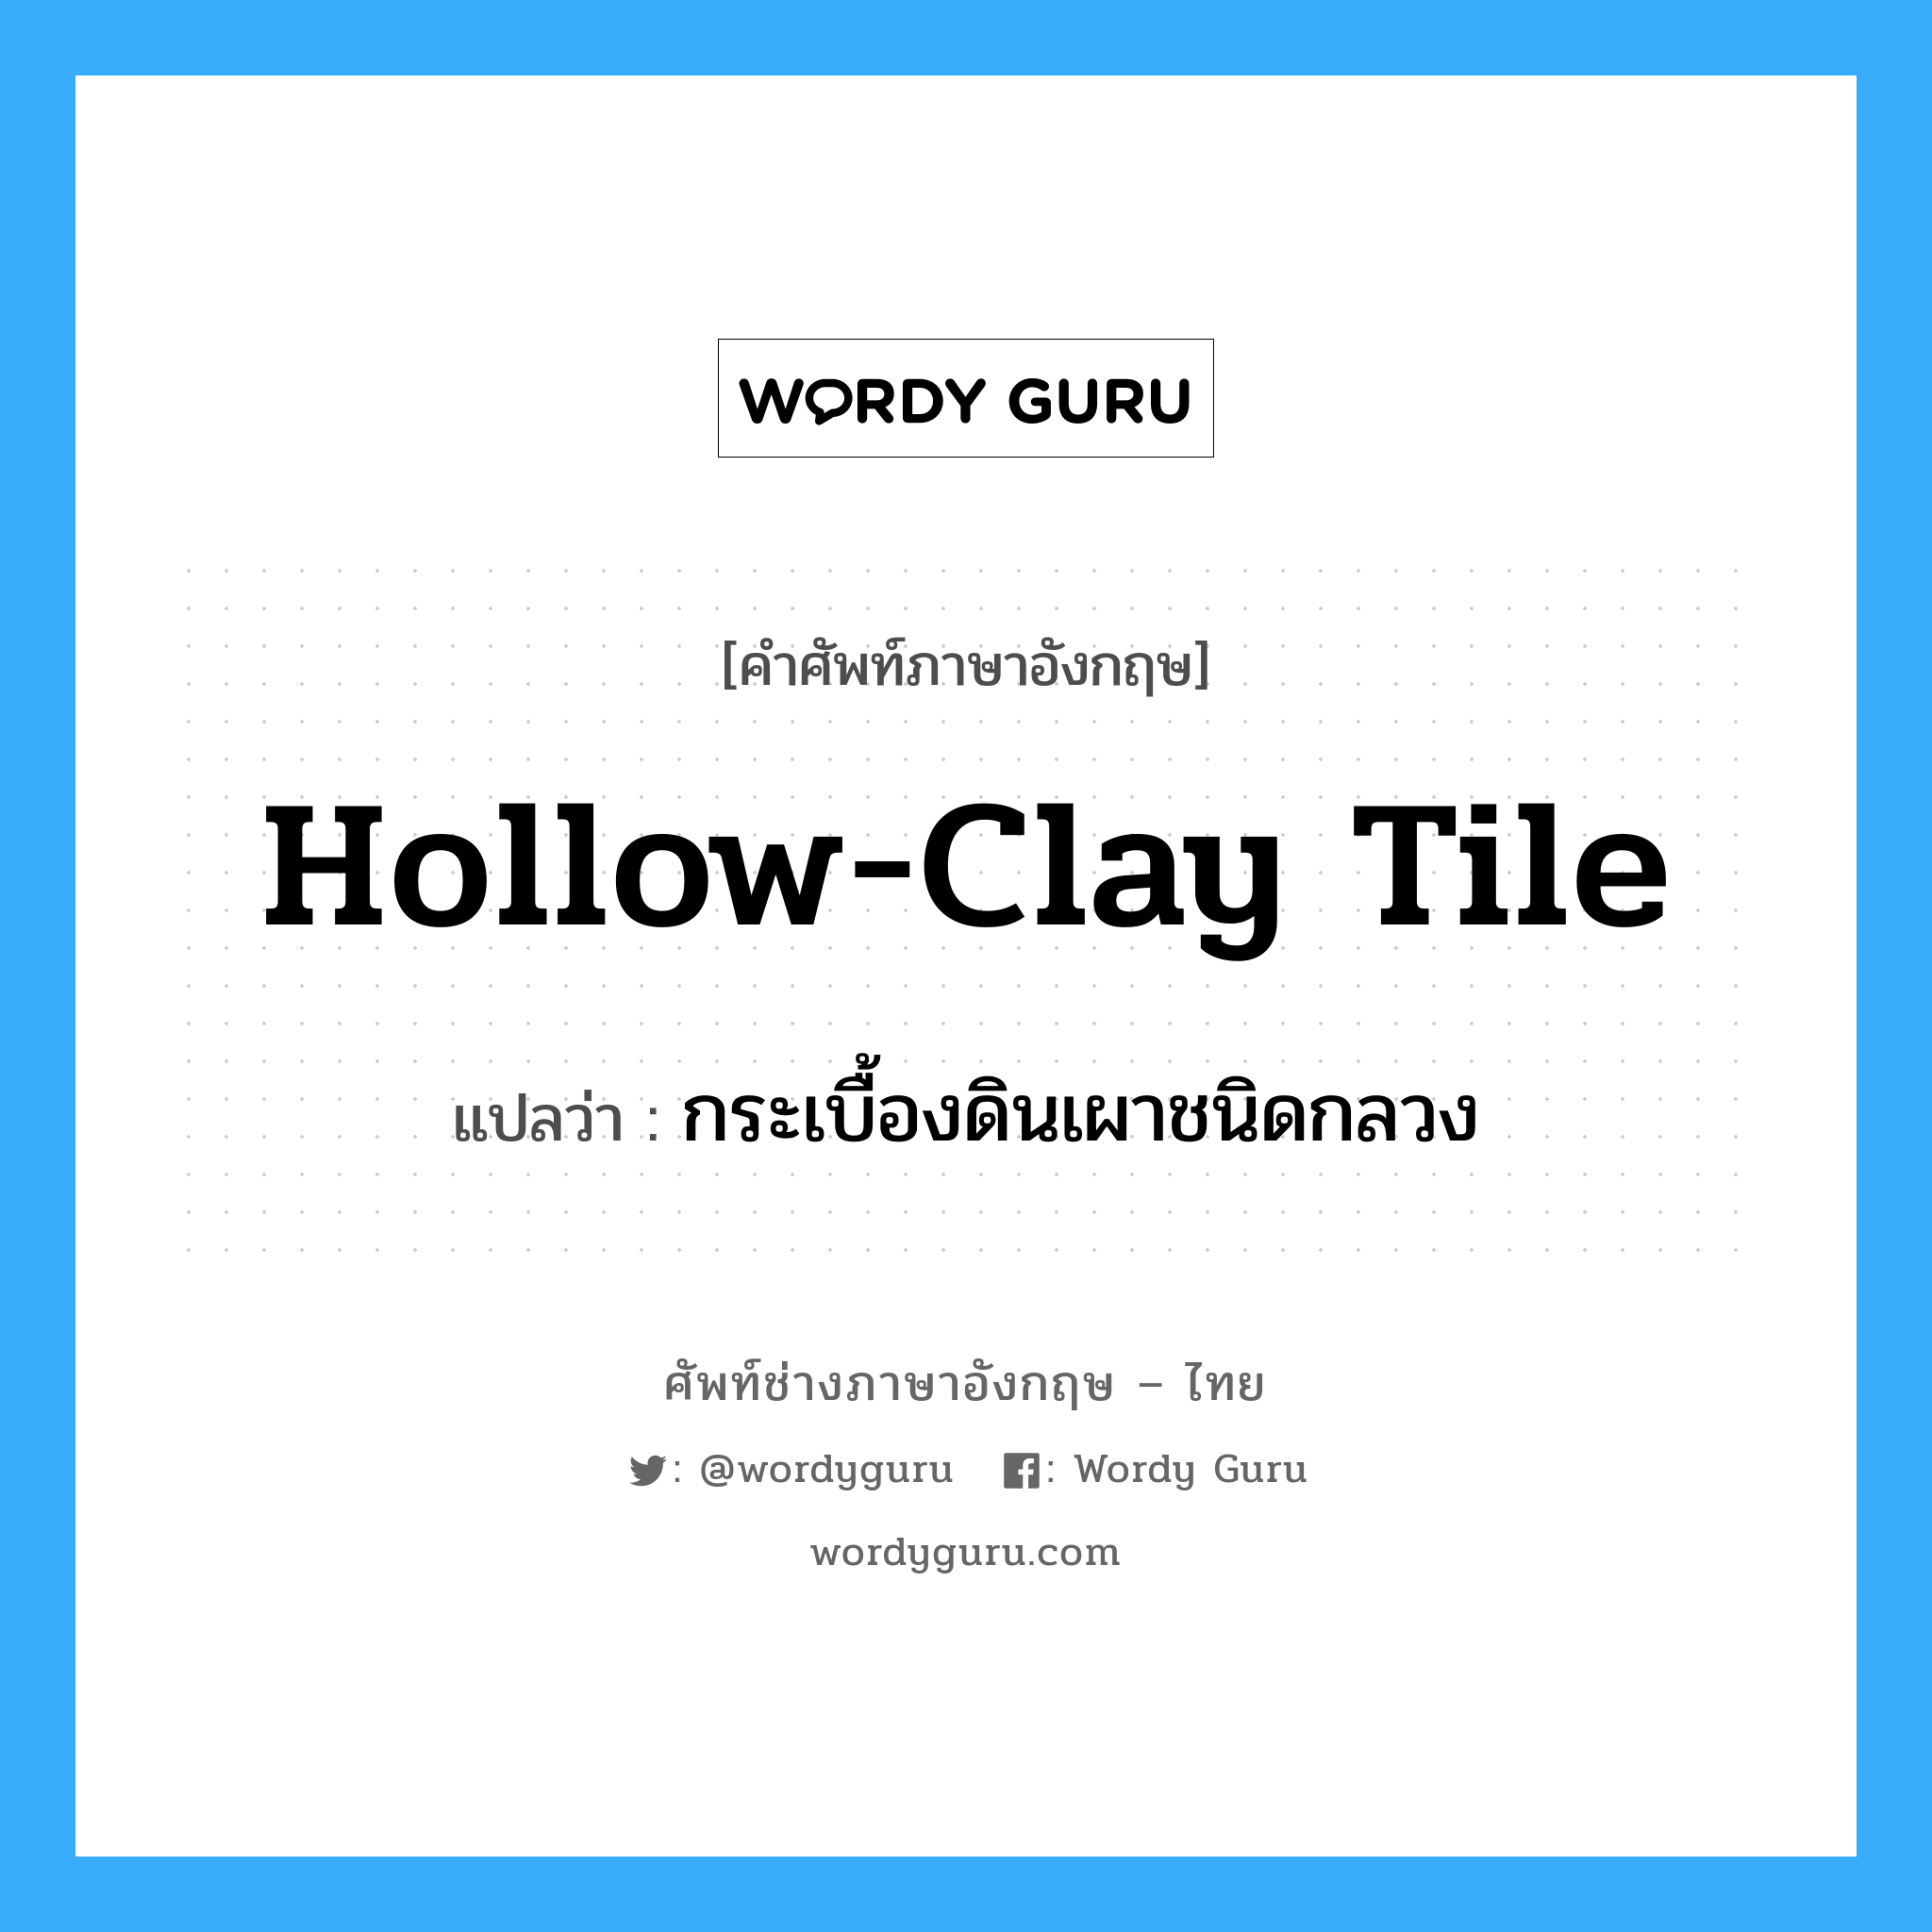 hollow-clay tile แปลว่า?, คำศัพท์ช่างภาษาอังกฤษ - ไทย hollow-clay tile คำศัพท์ภาษาอังกฤษ hollow-clay tile แปลว่า กระเบื้องดินเผาชนิดกลวง